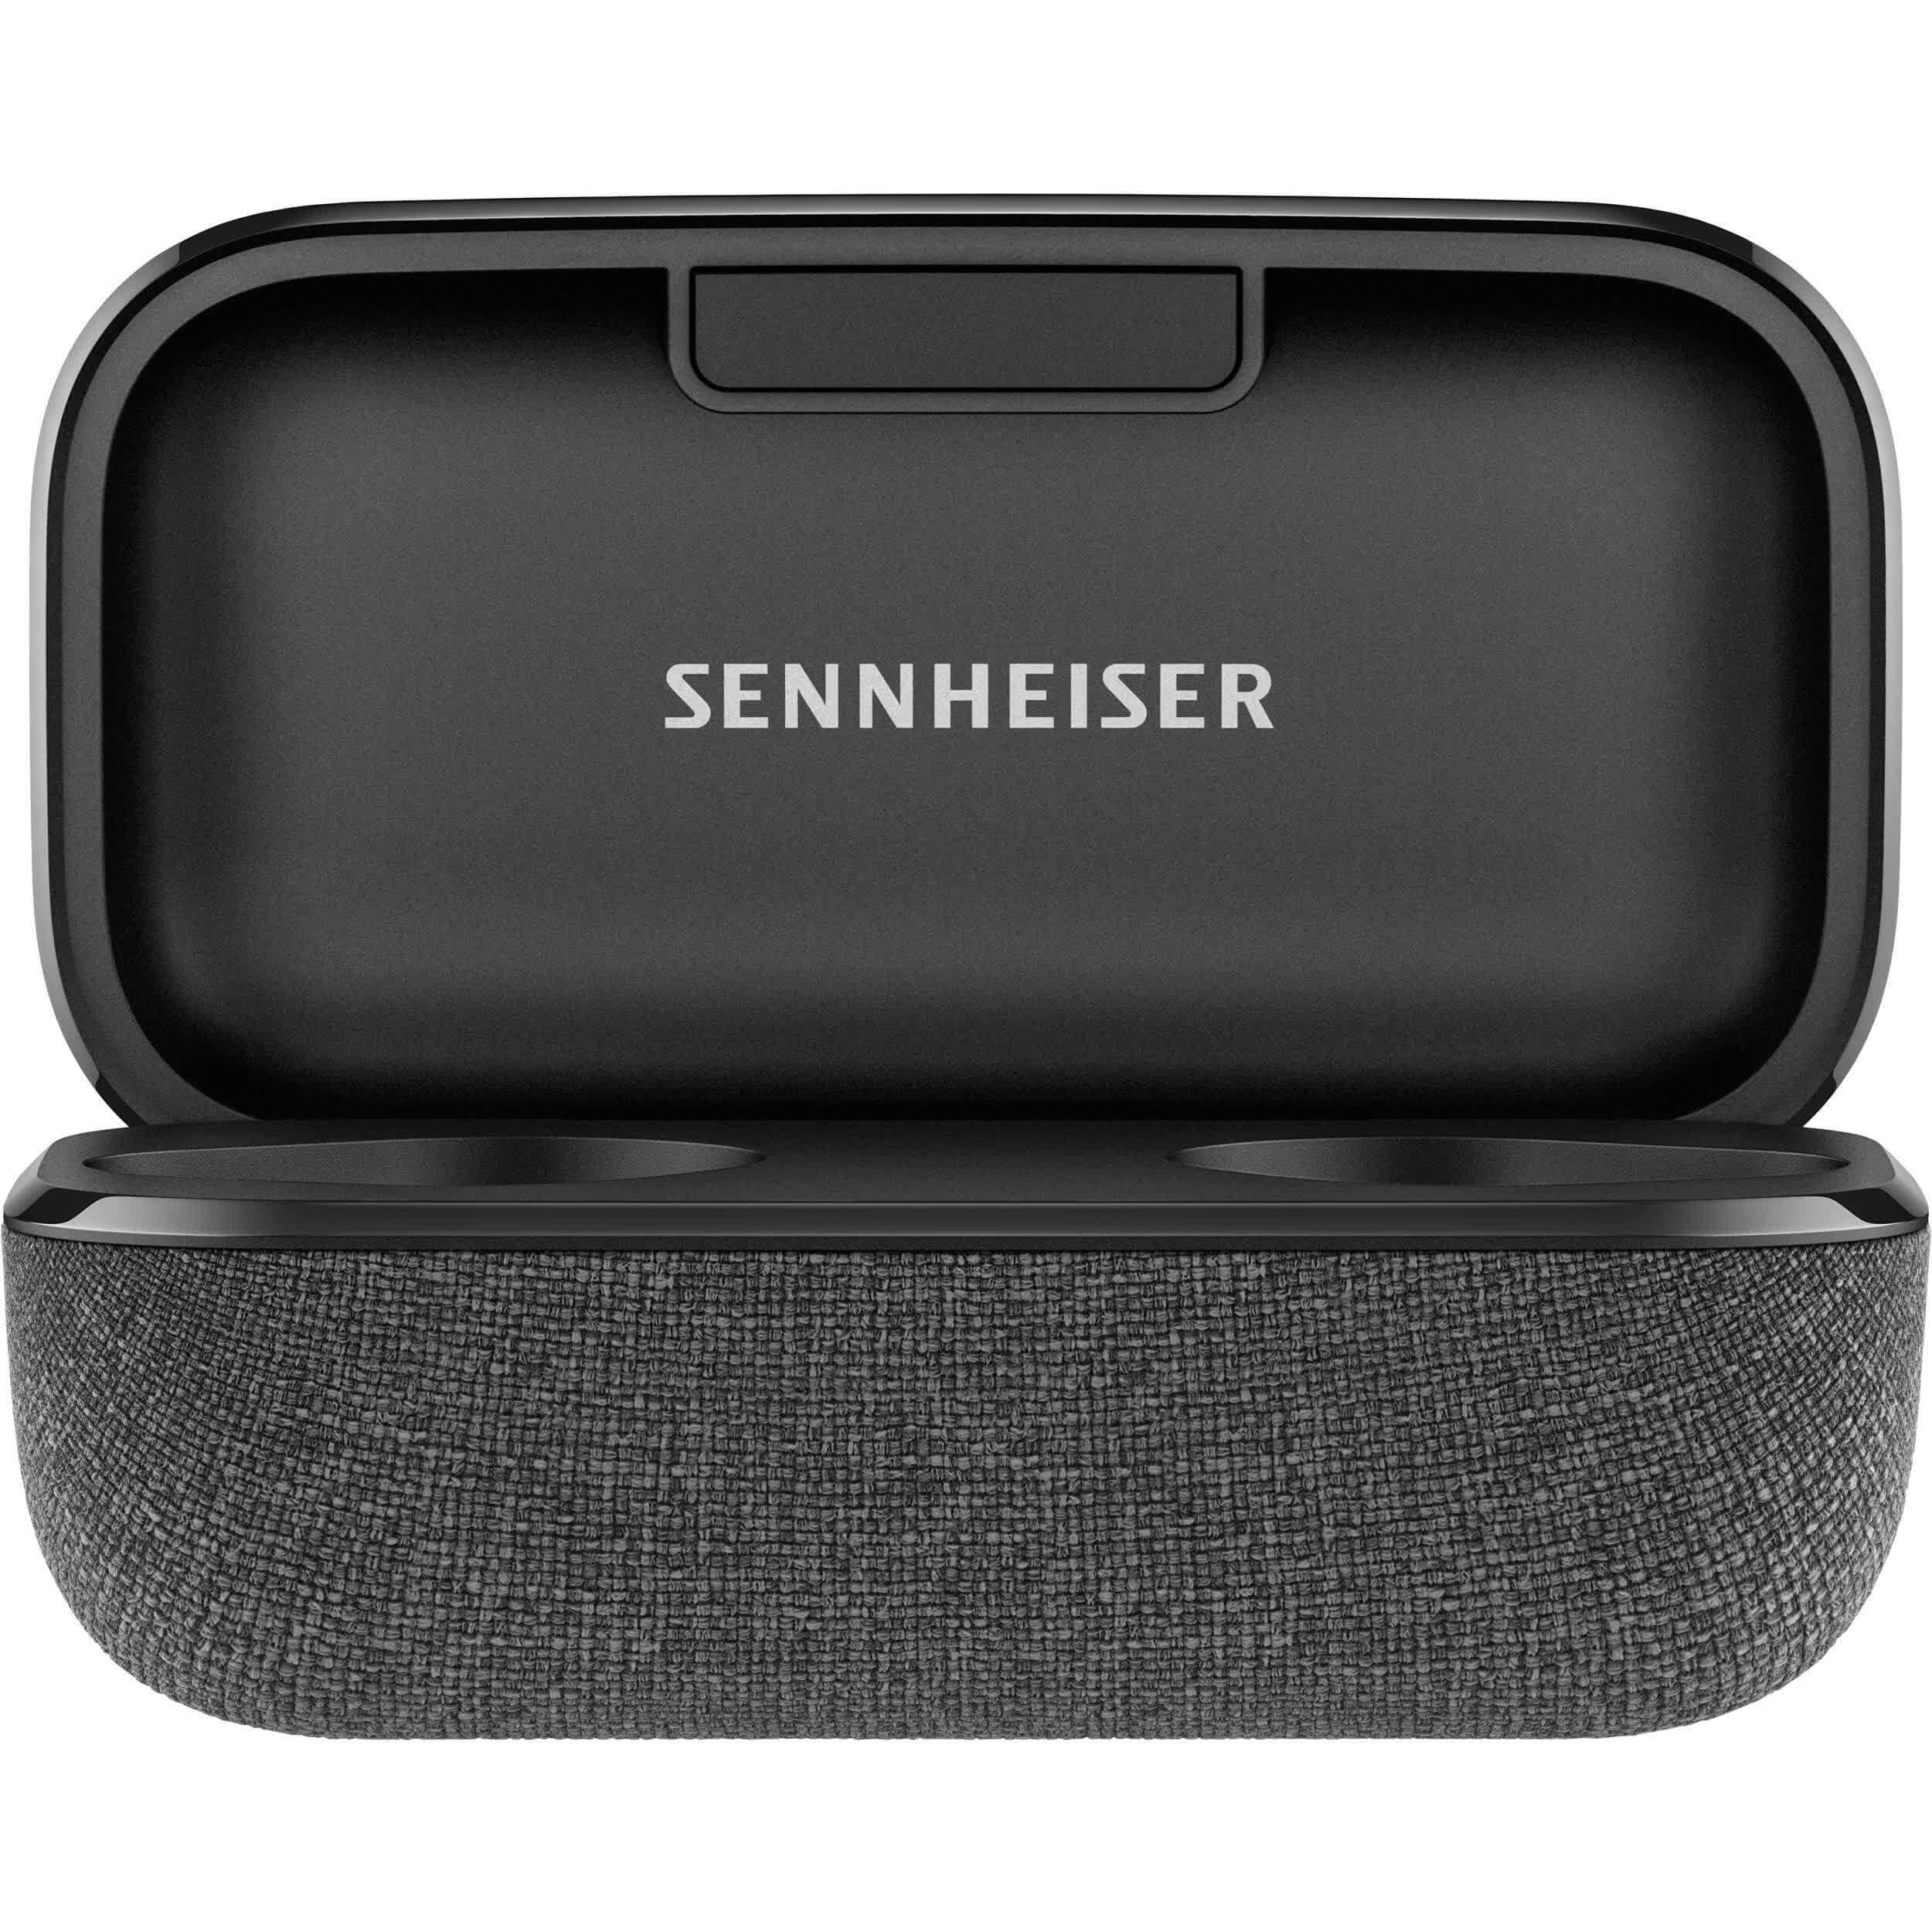 Sennheiser Momentum True Wireless 2 Reviews - TechSpot